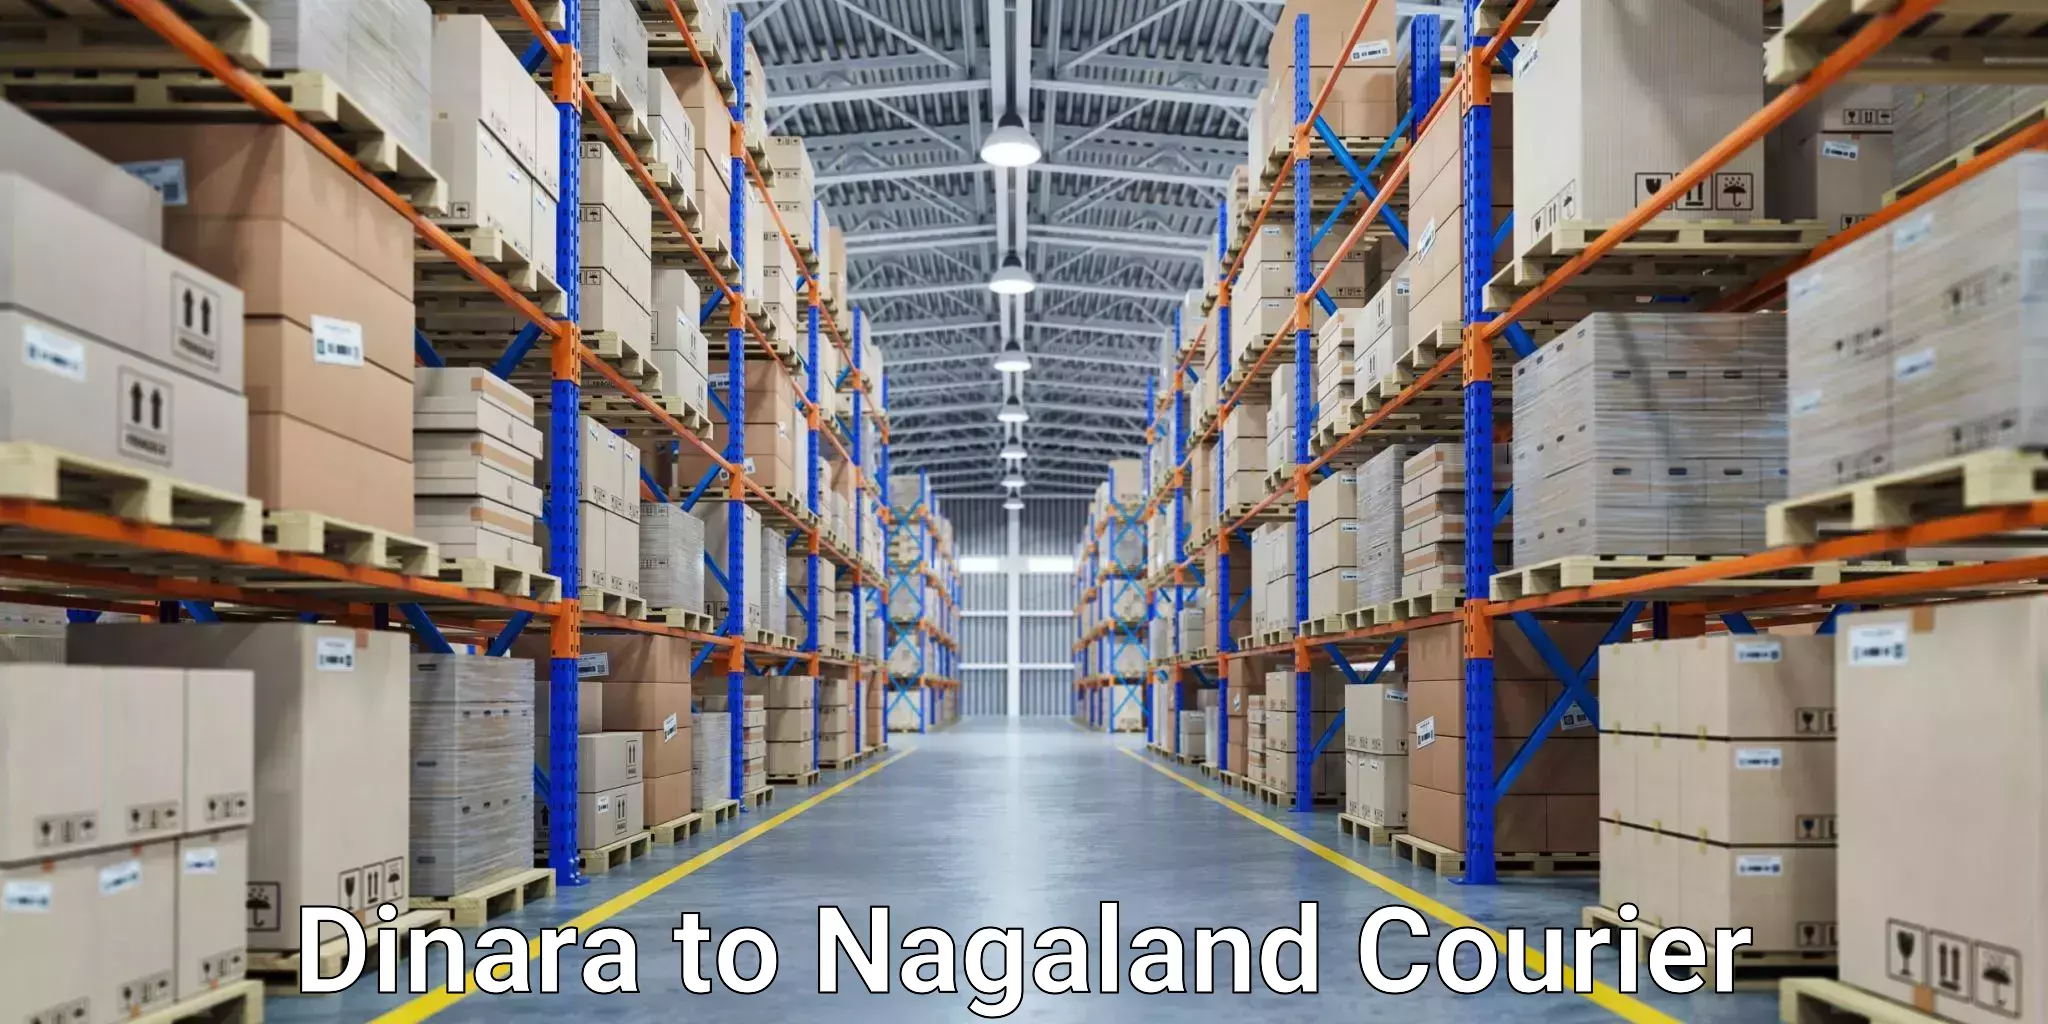 Courier app Dinara to Nagaland